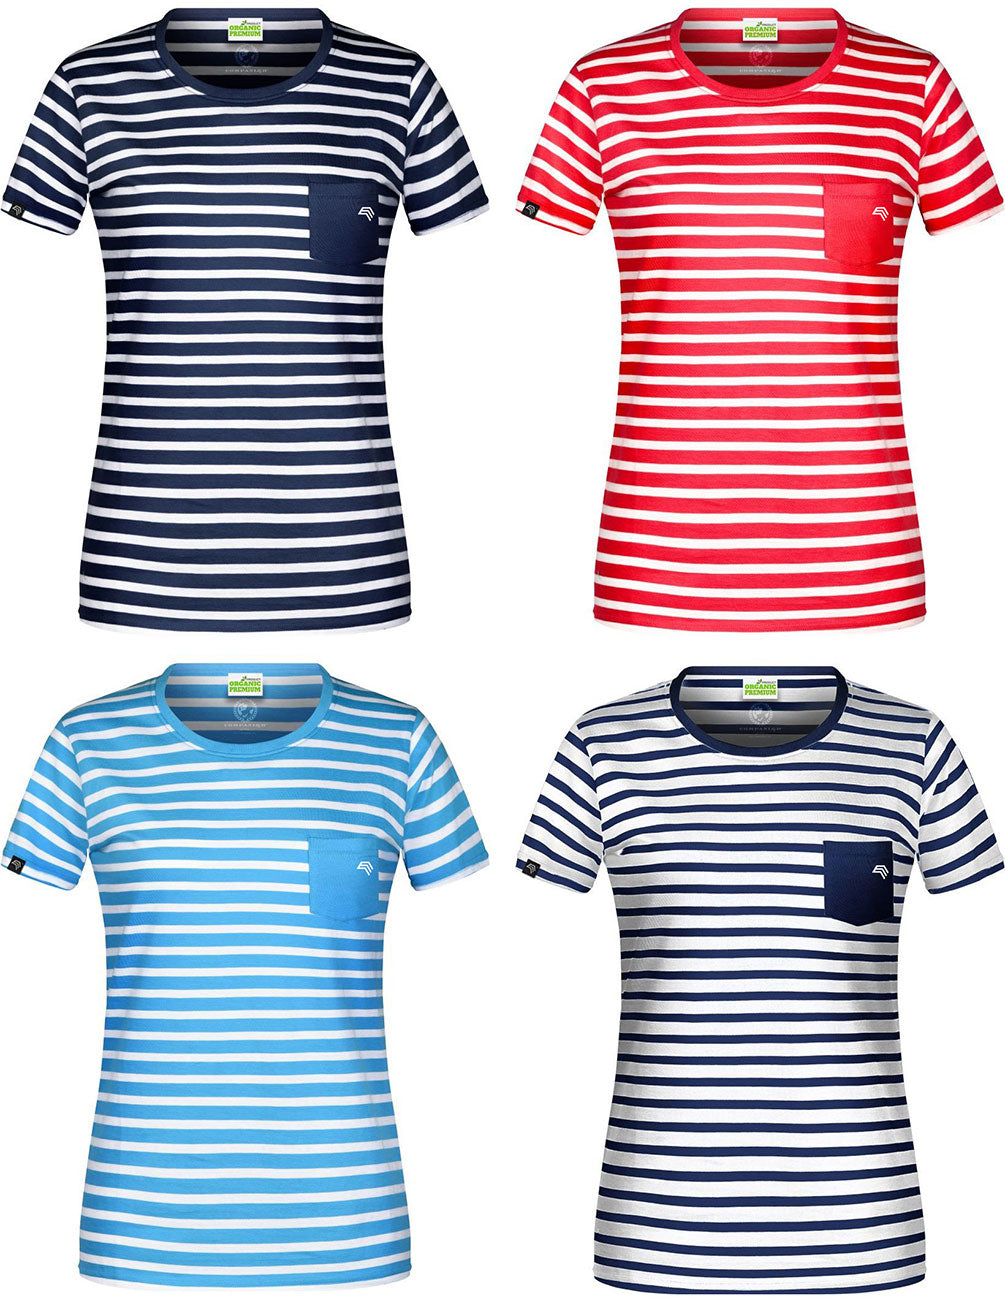 JAN 8027 ― Damen Bio-Baumwolle Streifen T-Shirt gestreift - Navy Blau / Weiß